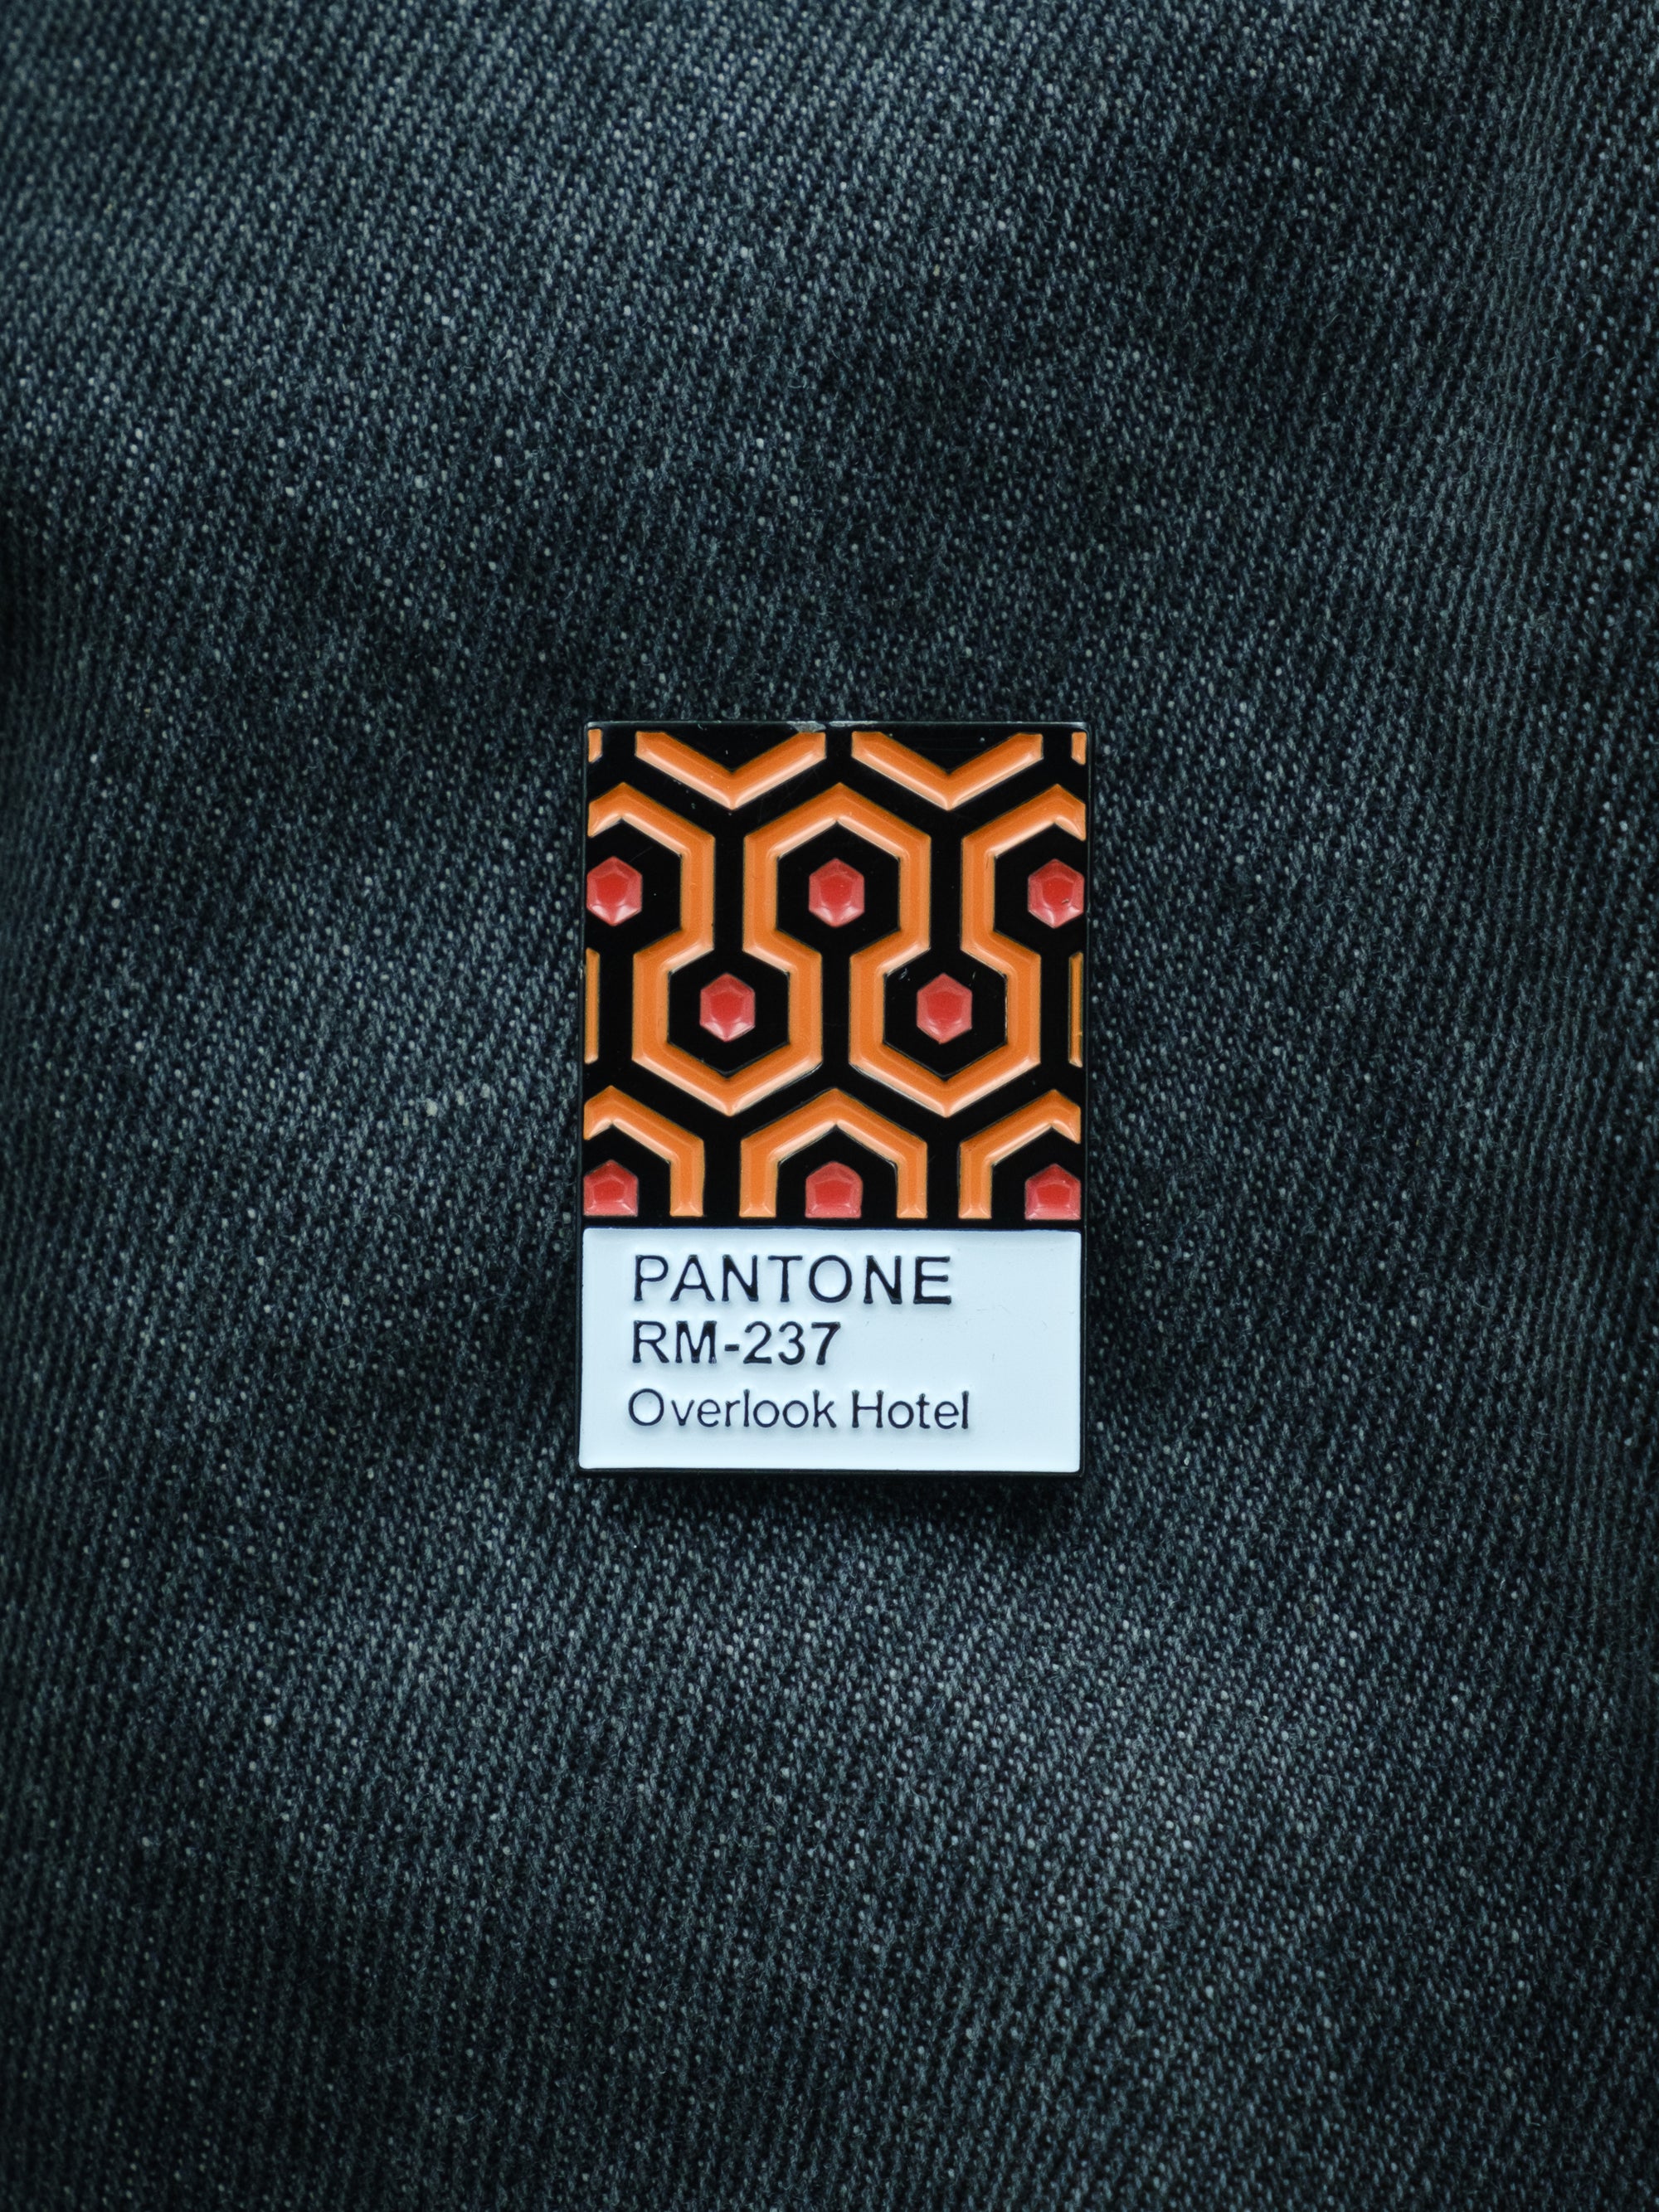 The Shining Carpet Pantone Inspired Pin